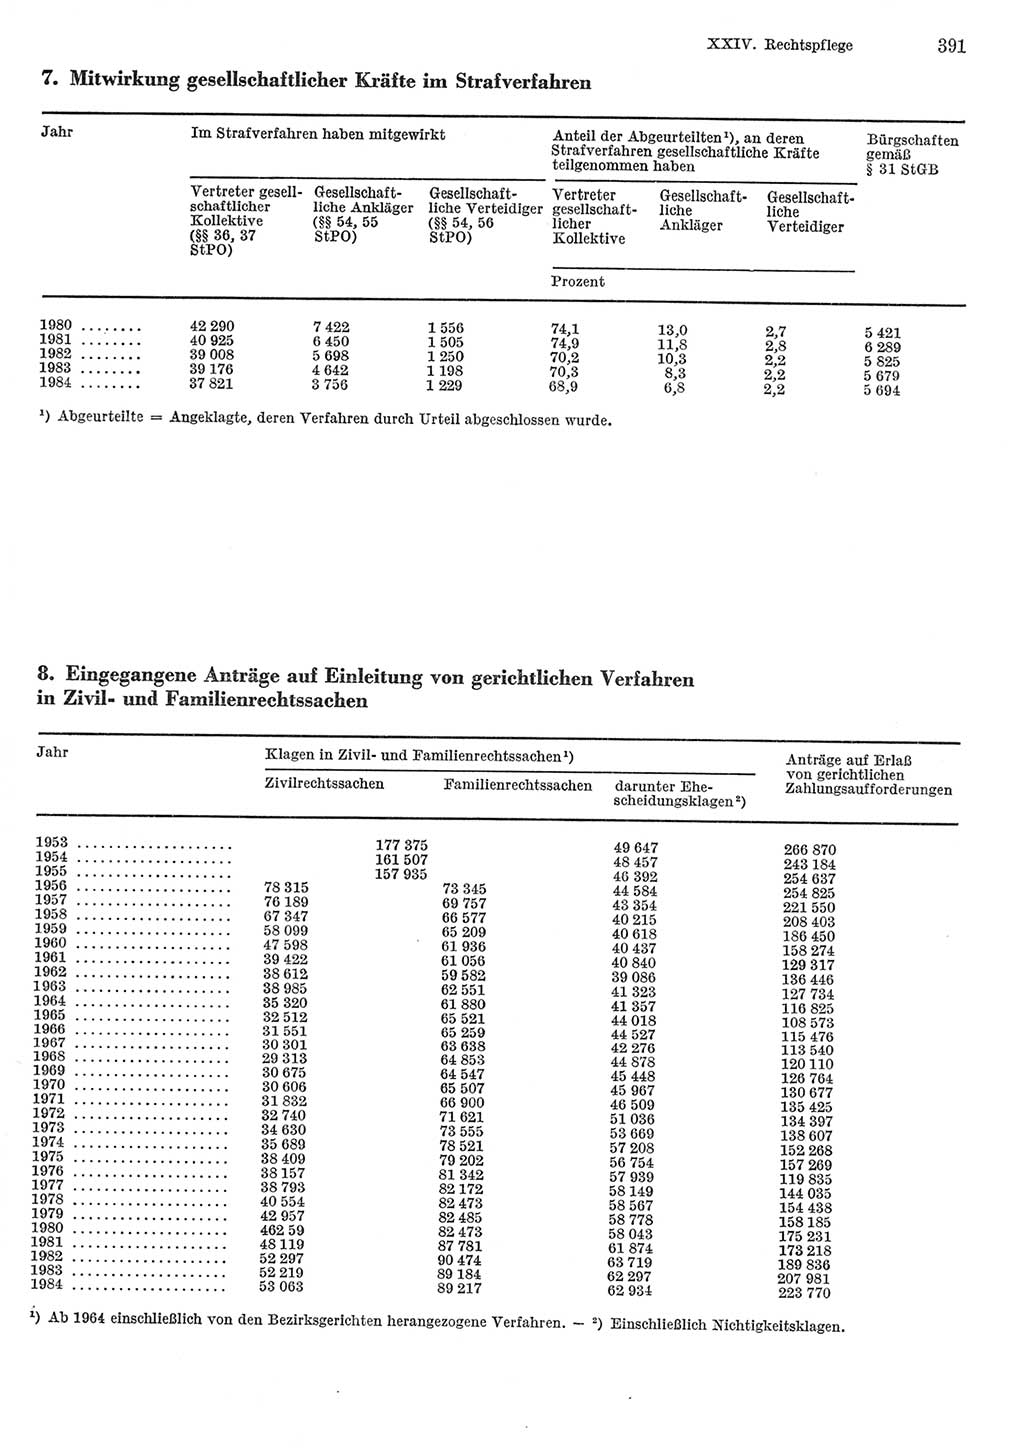 Statistisches Jahrbuch der Deutschen Demokratischen Republik (DDR) 1985, Seite 391 (Stat. Jb. DDR 1985, S. 391)